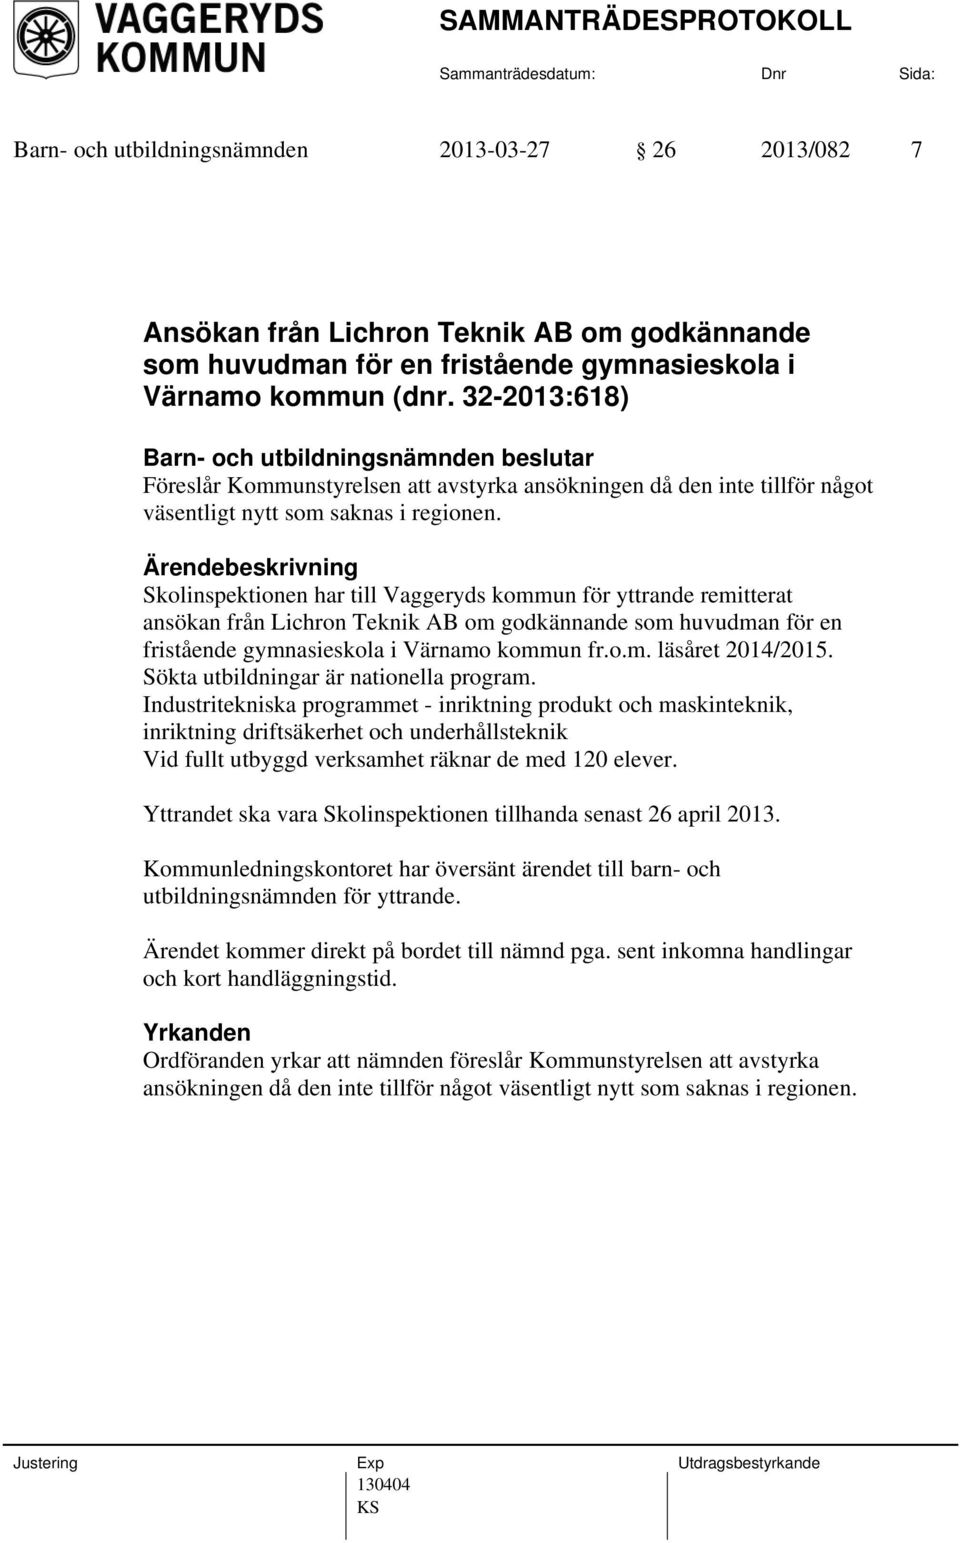 Skolinspektionen har till Vaggeryds kommun för yttrande remitterat ansökan från Lichron Teknik AB om godkännande som huvudman för en fristående gymnasieskola i Värnamo kommun fr.o.m. läsåret 2014/2015.